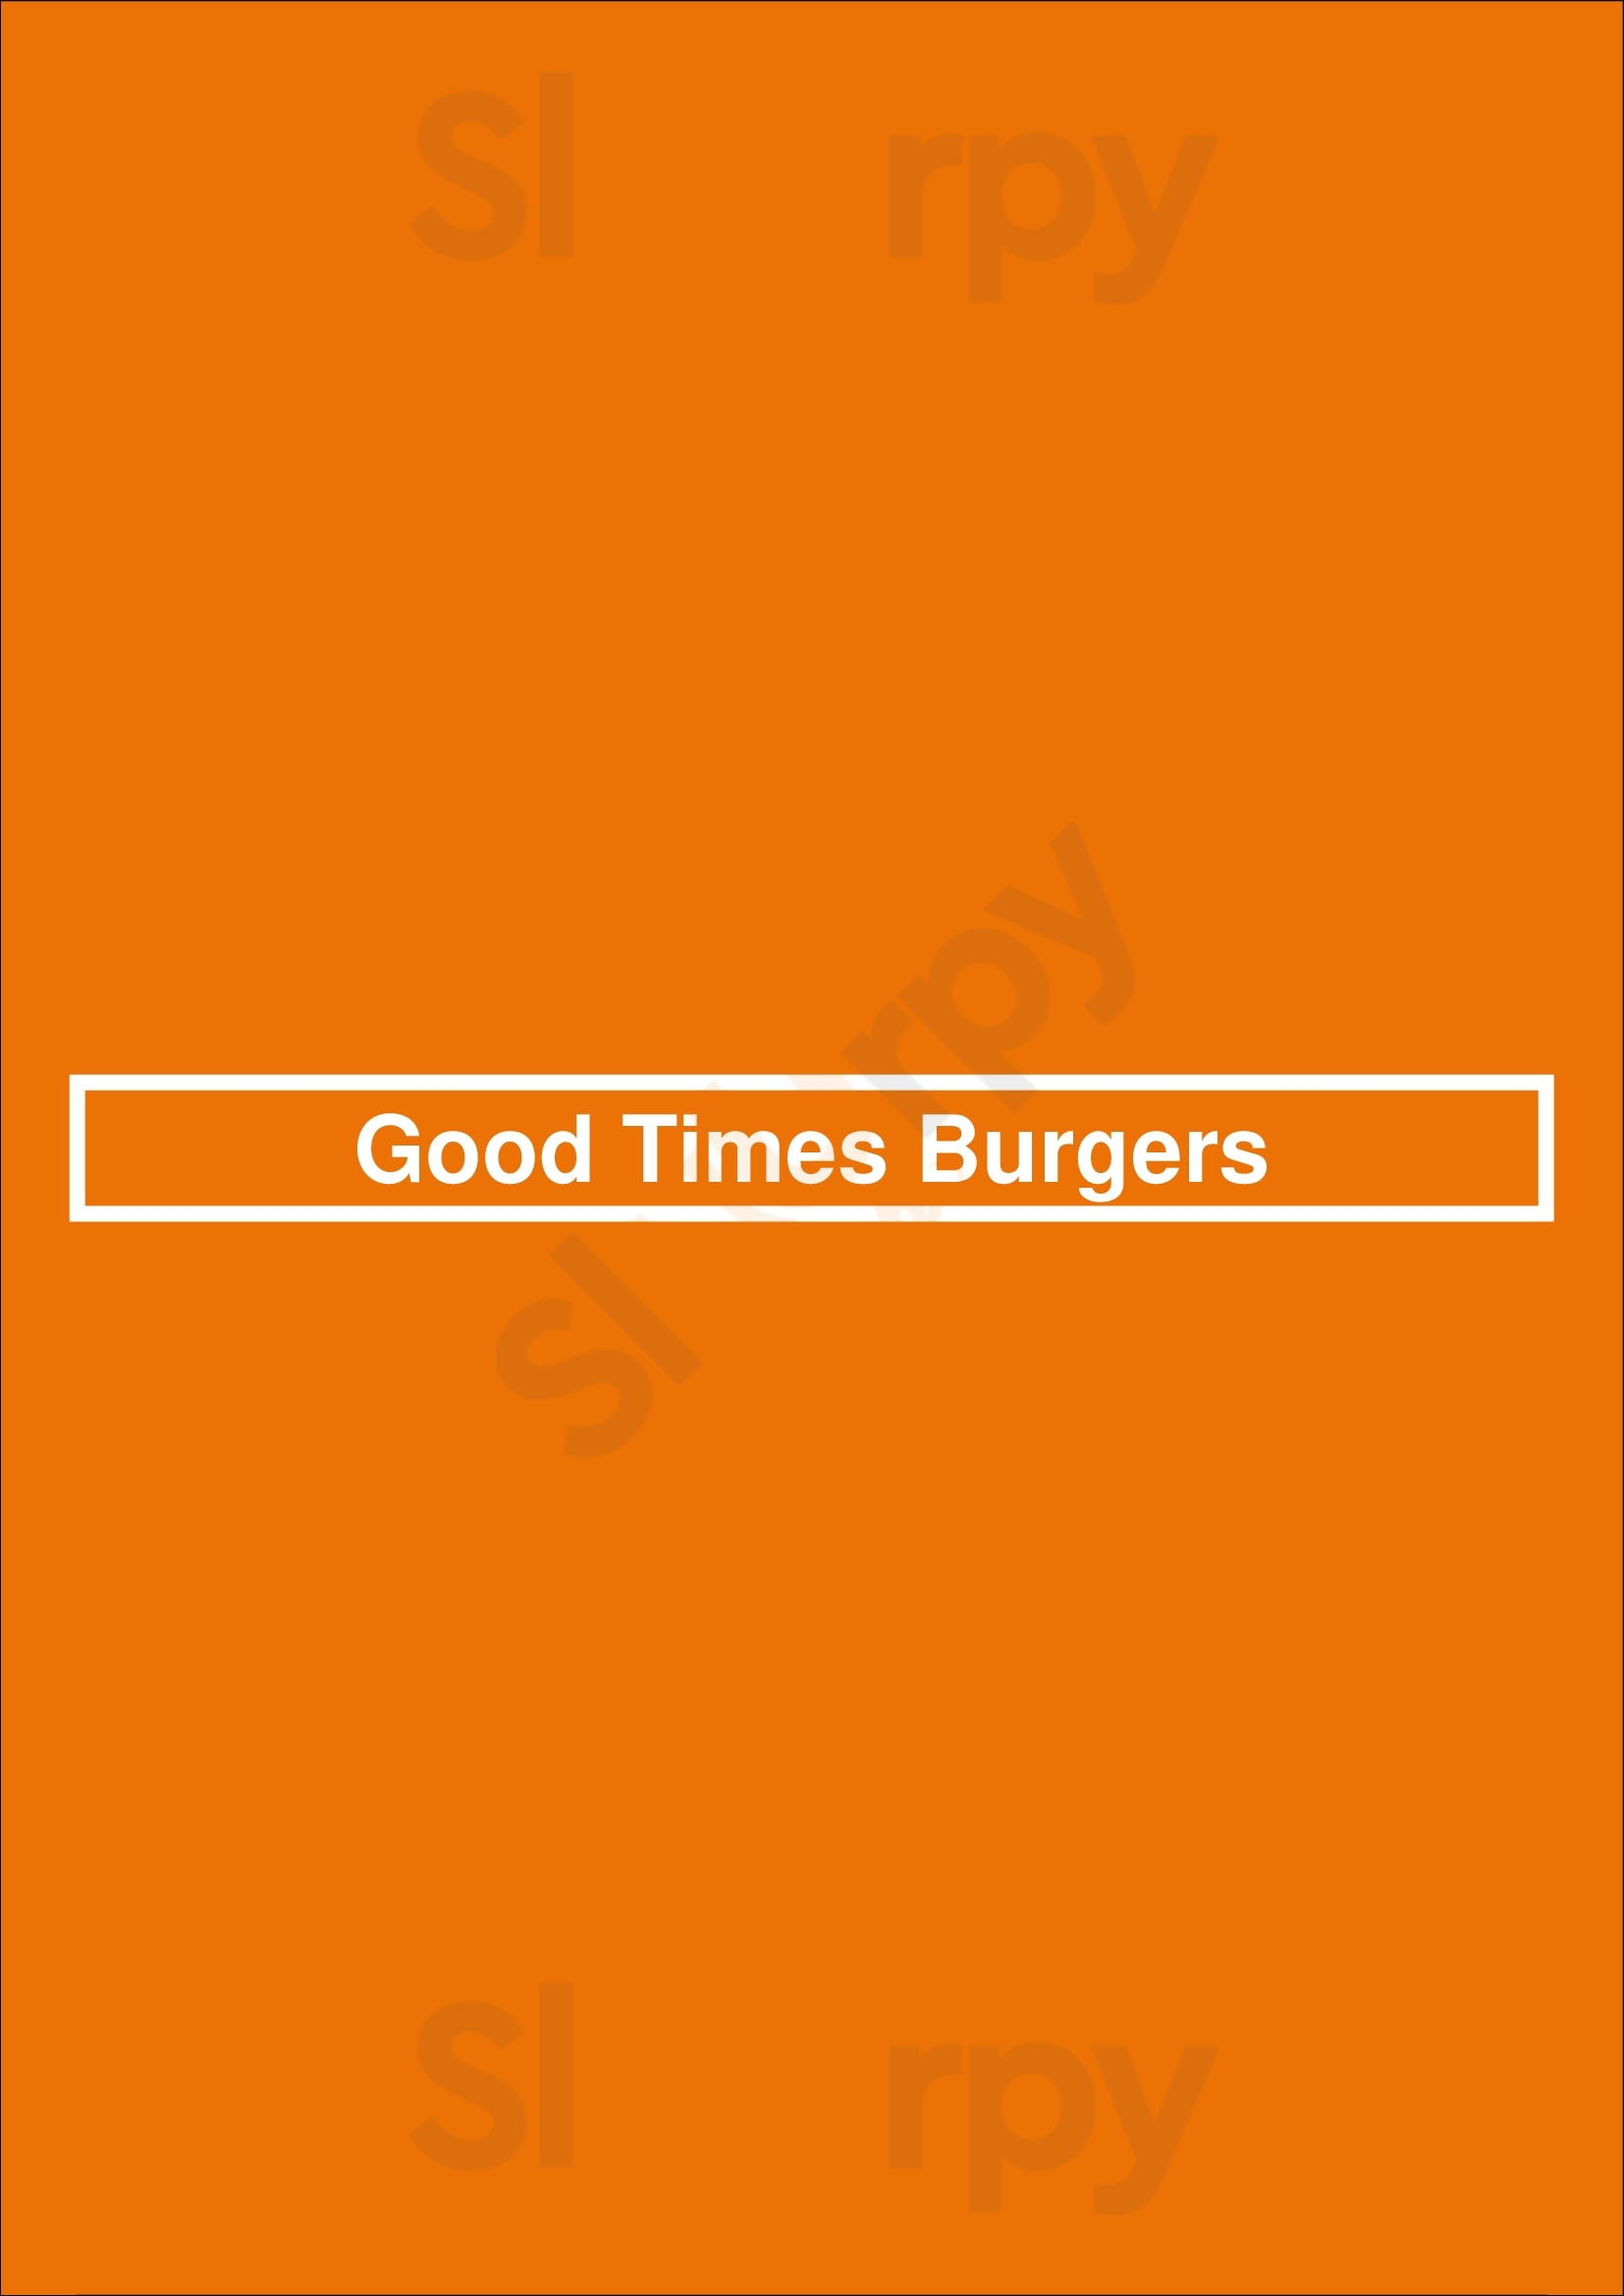 Good Times Burgers & Frozen Custard Denver Menu - 1